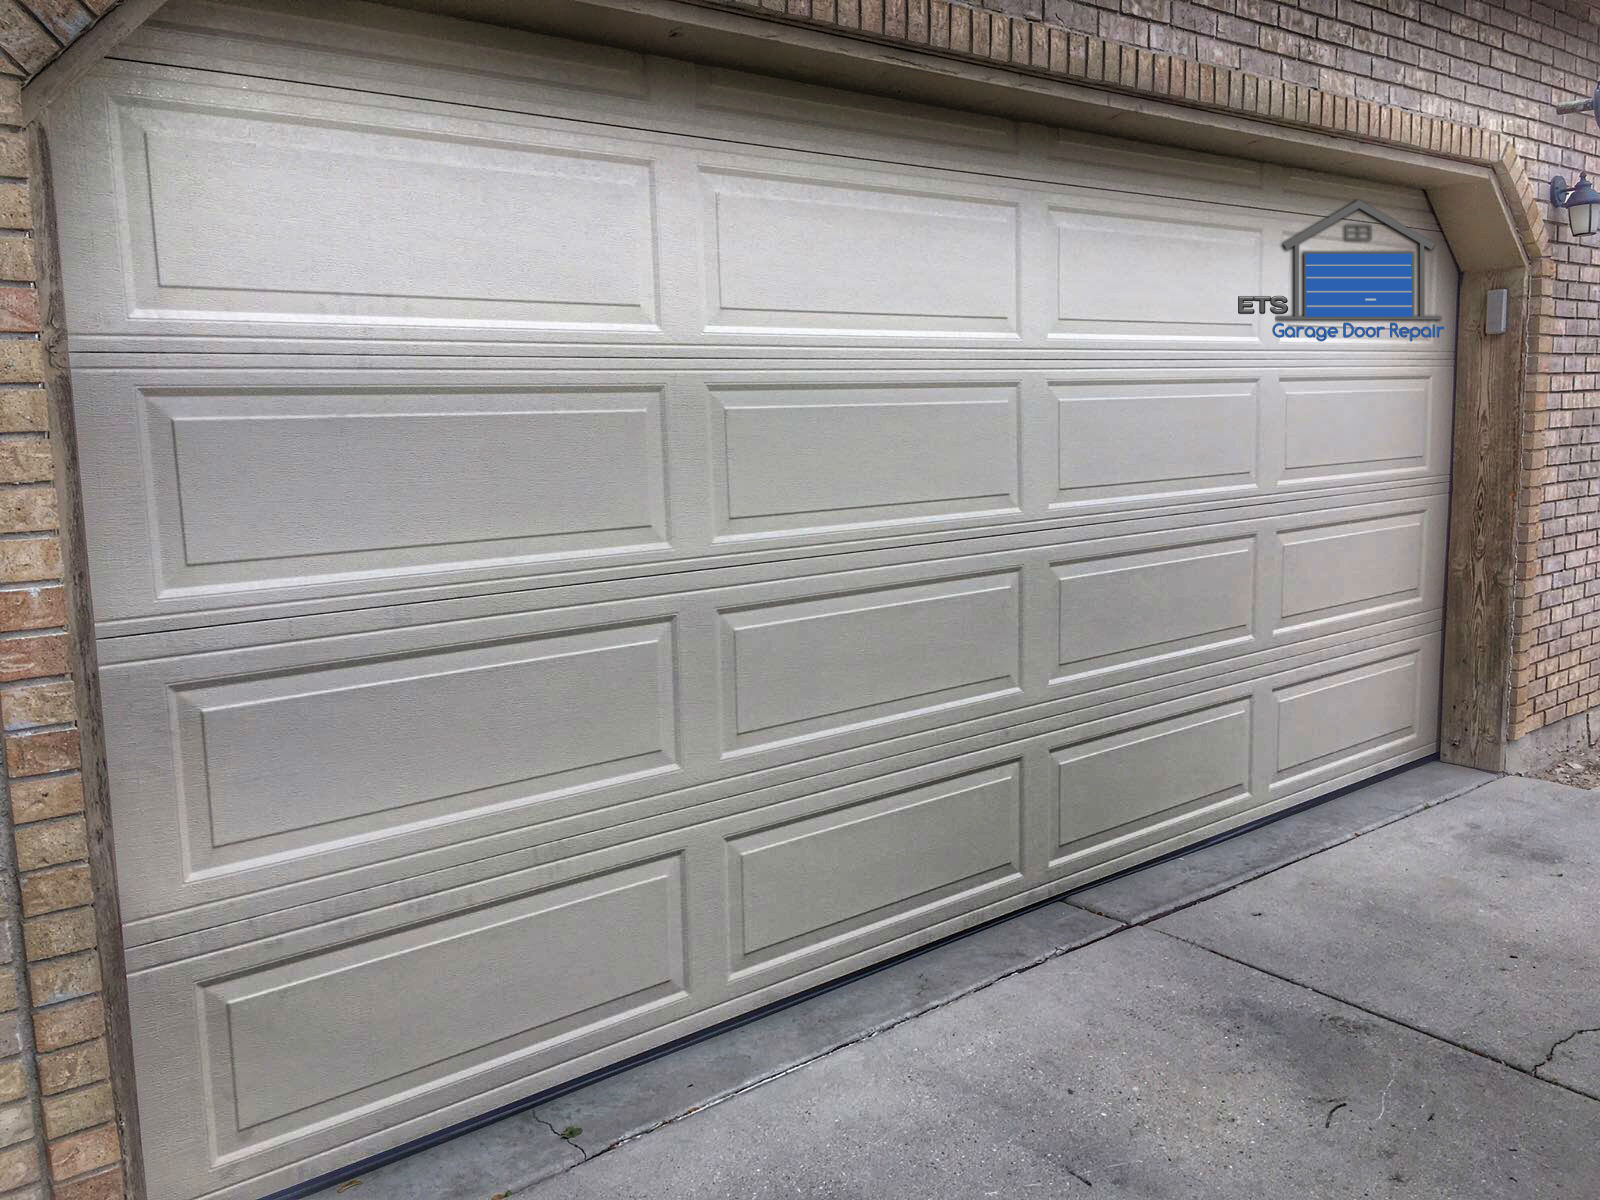 ETS Garage Door Repair Of Oregon City- Garage Door Repair & Installation Services4